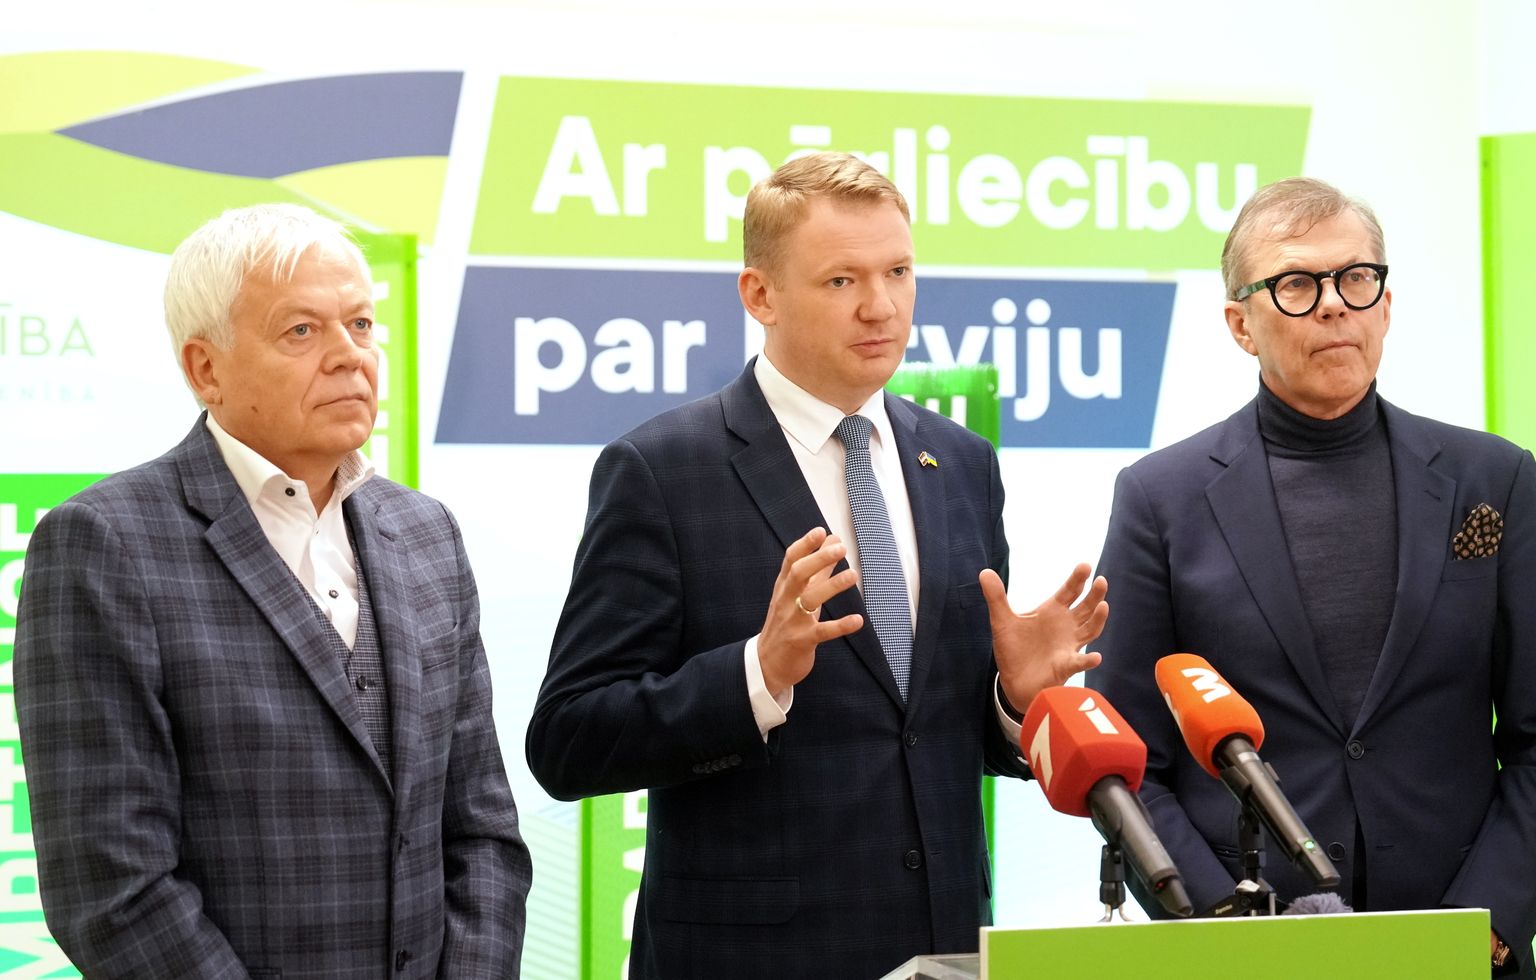 Partijas "Apvienotais saraksts" pārstāvji - Liepājas partijas priekšsēdētājs Uldis Sesks (no kreisās), "Latvijas Reģionu apvienība" valdes priekšsēdētājs Edvards Smiltēns un partijas Ministru prezidenta amata kandidāts Uldis Pīlēns piedalās preses brīfingā pēc tikšanās ar partijas "Jaunā vienotība" pārstāvjiem, kurā pārrunāja jaunās valdības prioritātes un darāmos darbus 14. Saeimā.